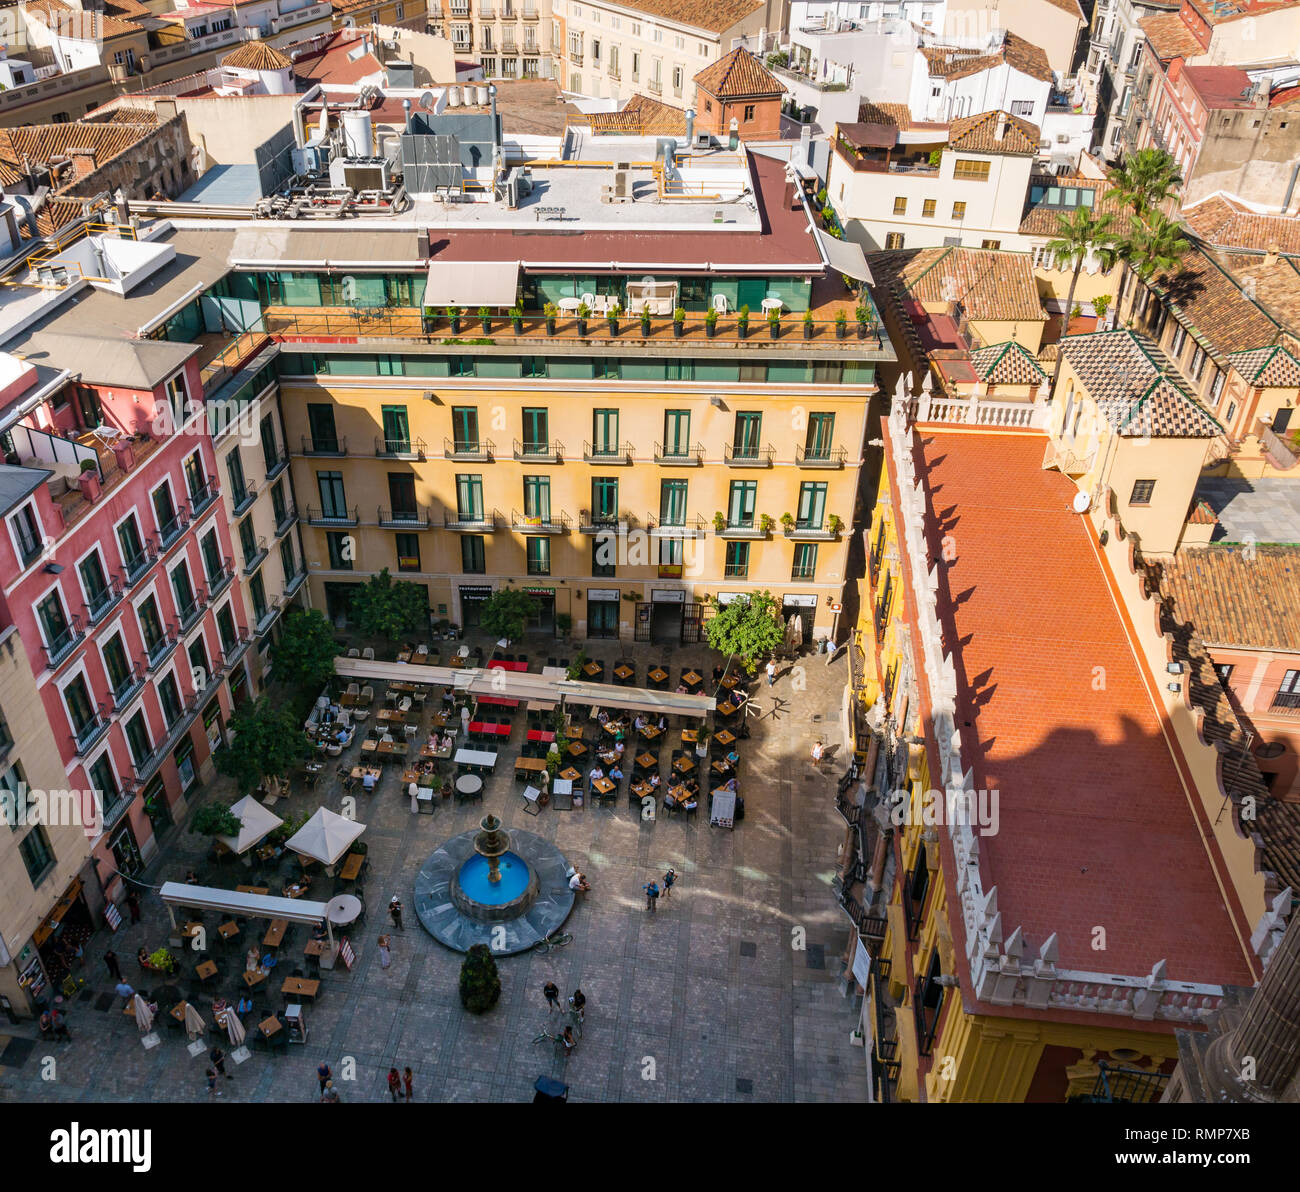 Vista desde arriba de las casas antiguas, calles estrechas y mesas de café, en la Plaza de Obispo con el Palacio Episcopal, el casco antiguo de Málaga, Andalucía, España Foto de stock